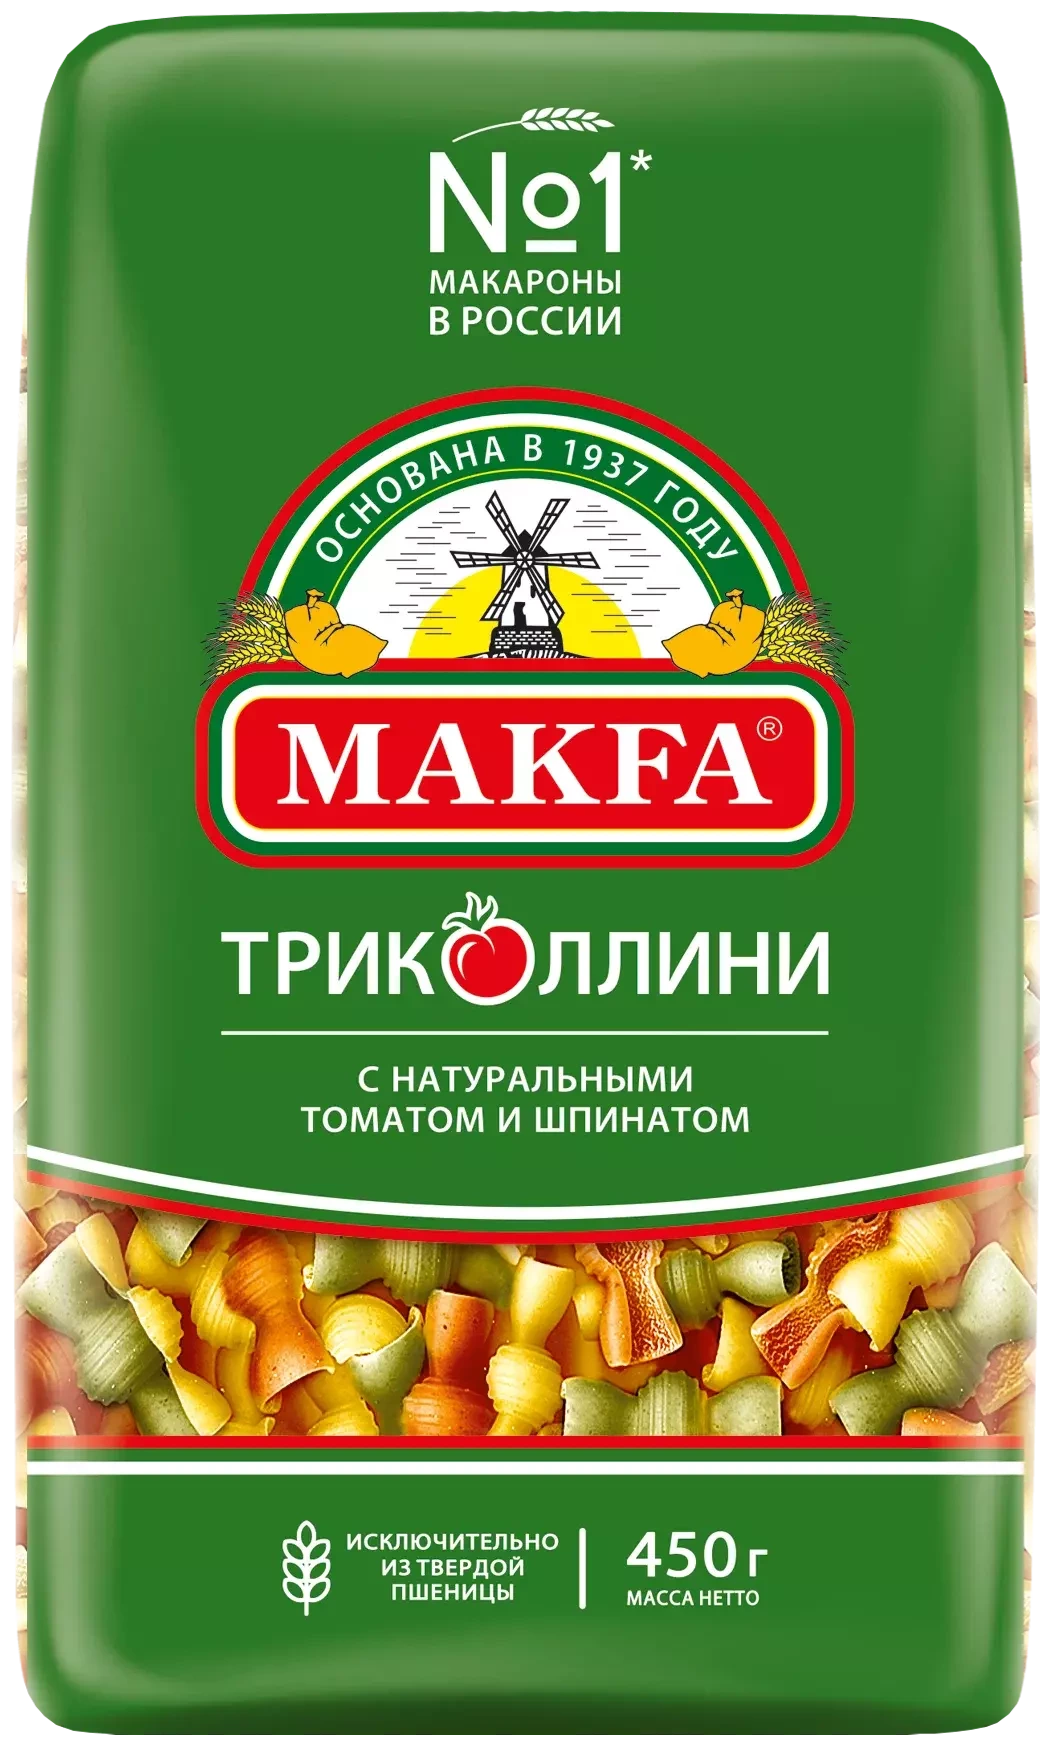 MAKFA, Макароны триколлини, 450 гр